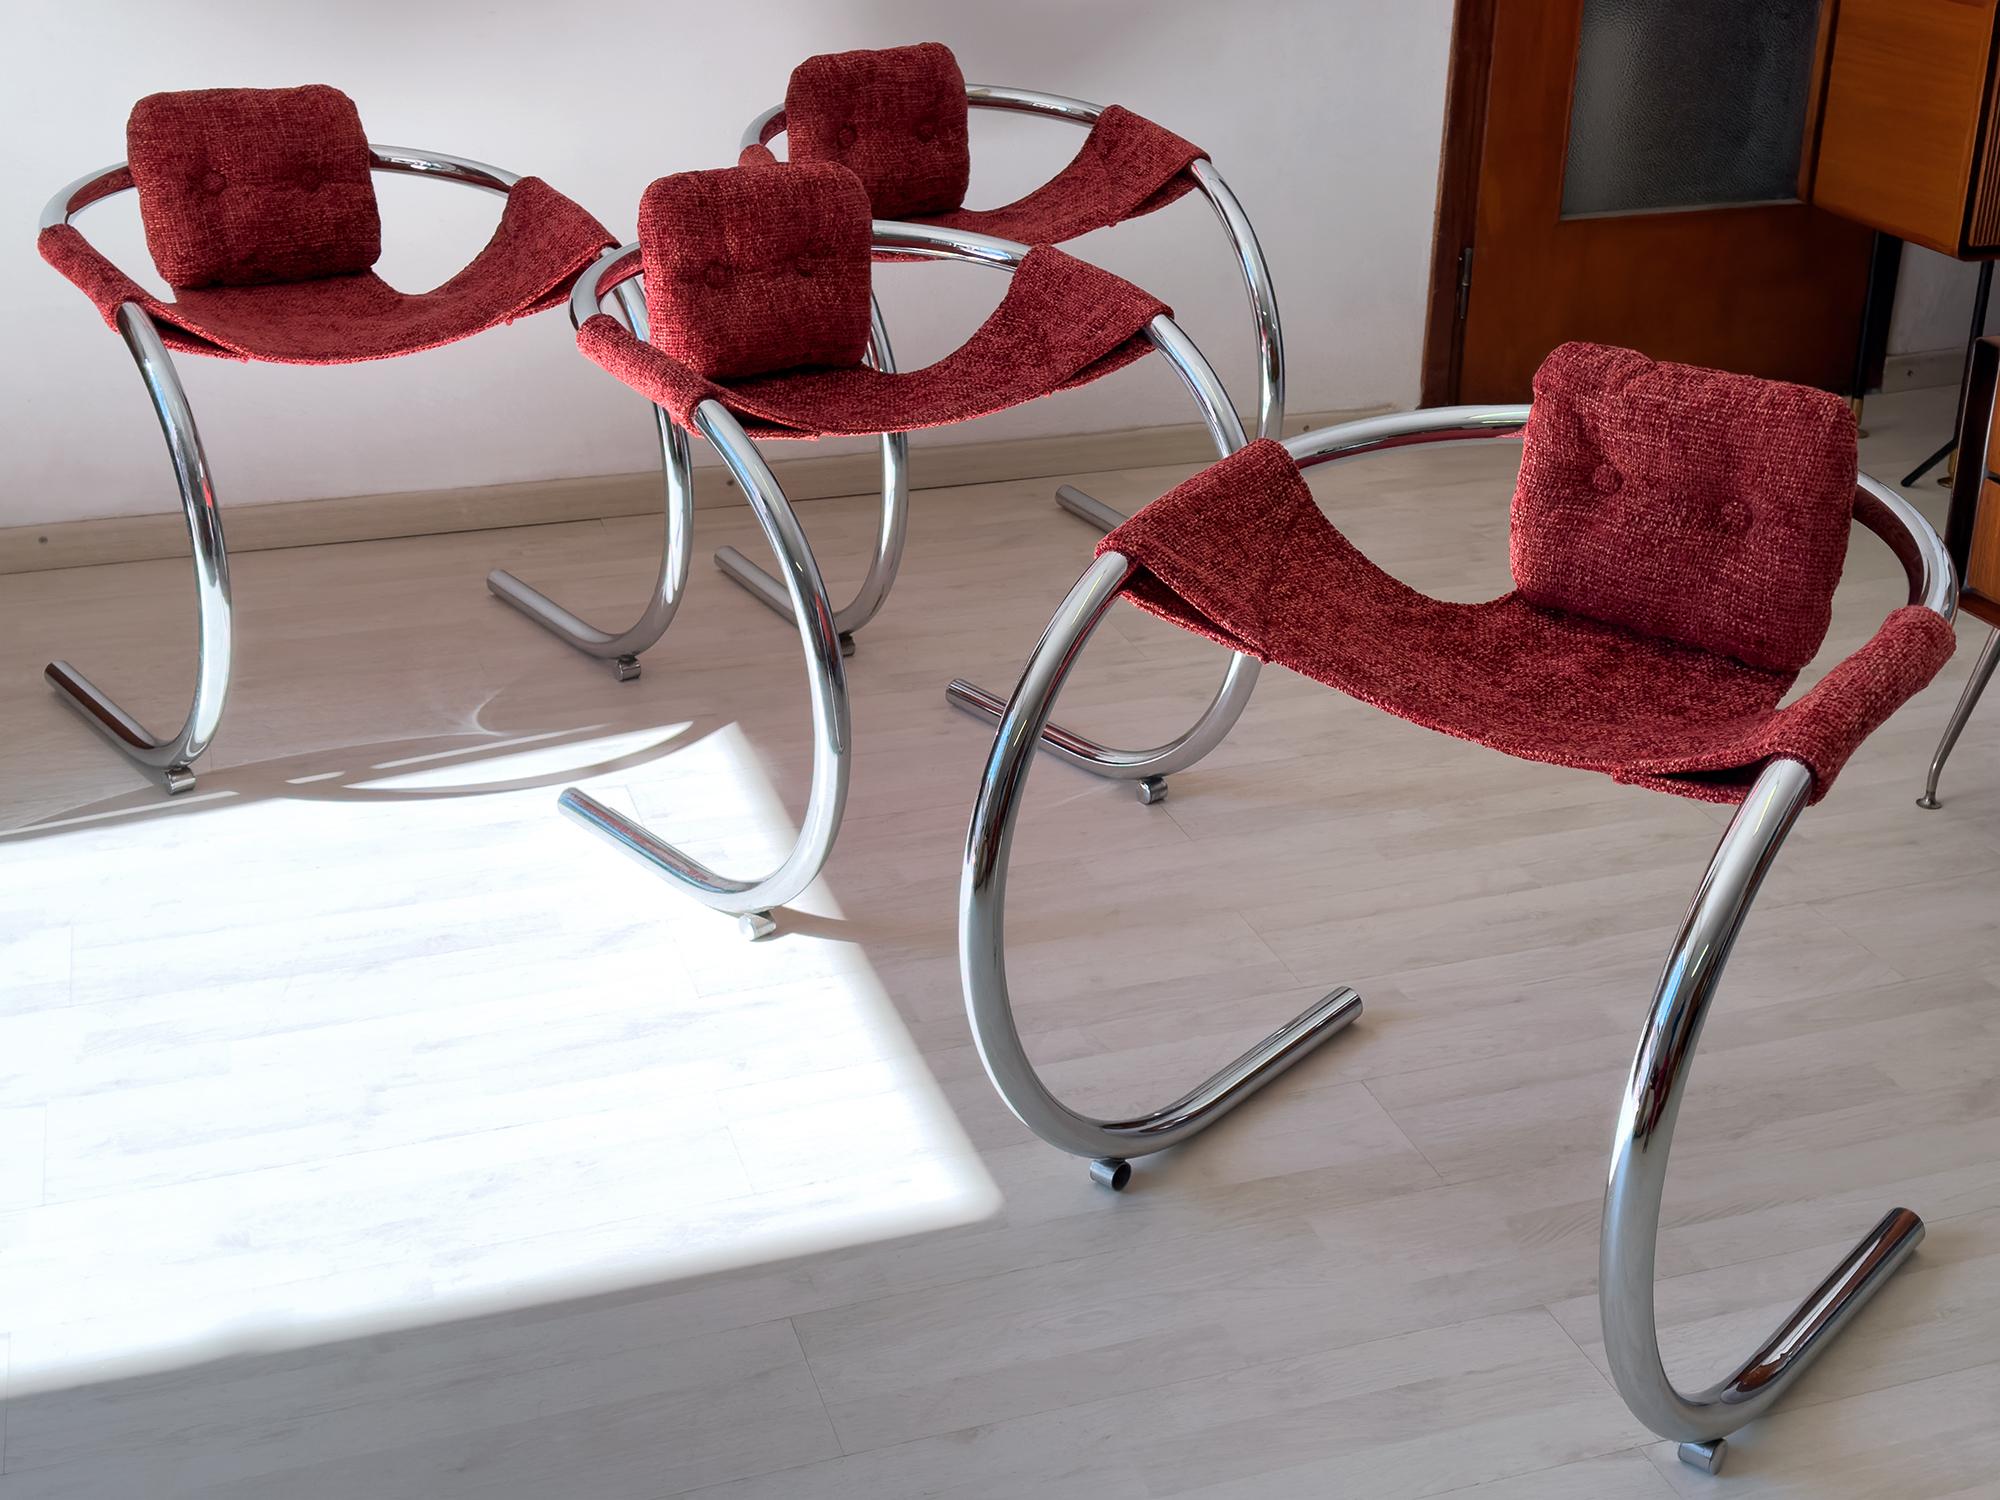 Très rare et superbe ensemble de quatre chaises conçues par Byron Botker pour Lande Manufacturing Co. dans les années 1970.
Les structures métalliques chromées incurvées sont très robustes et en très bon état pour l'époque, comme le montrent les